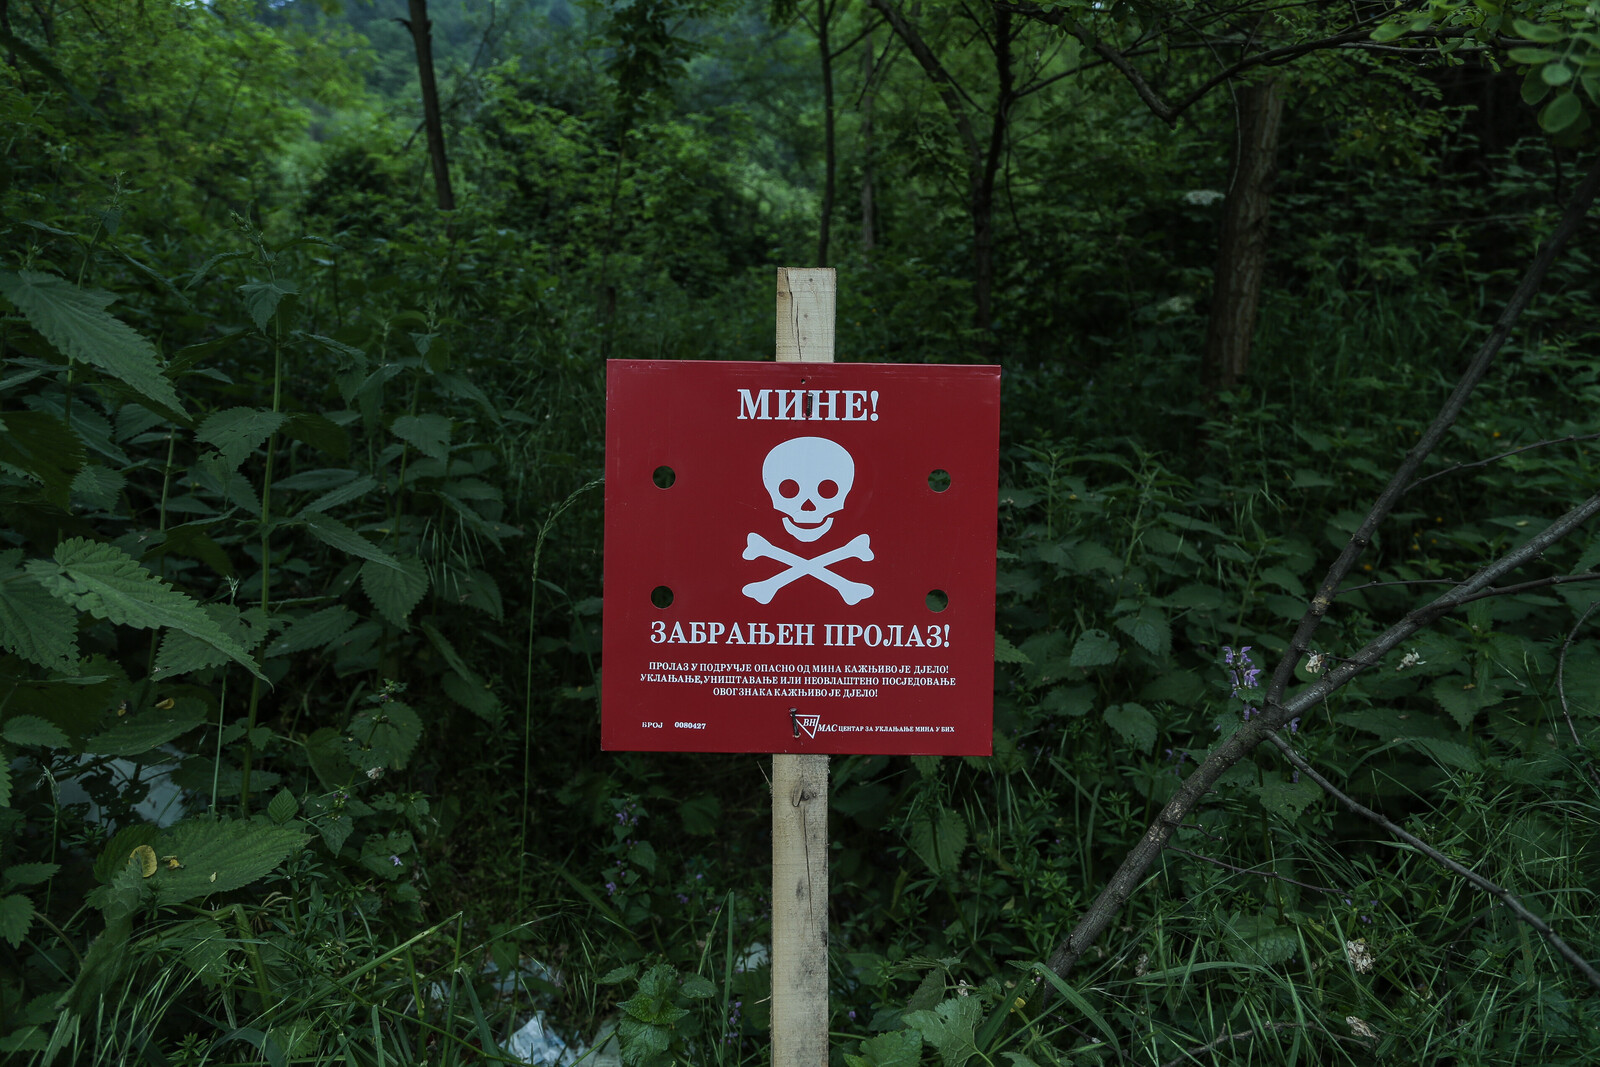 In Bosnien und Herzegowina warnt ein Schild vor einem verminten Gebiet